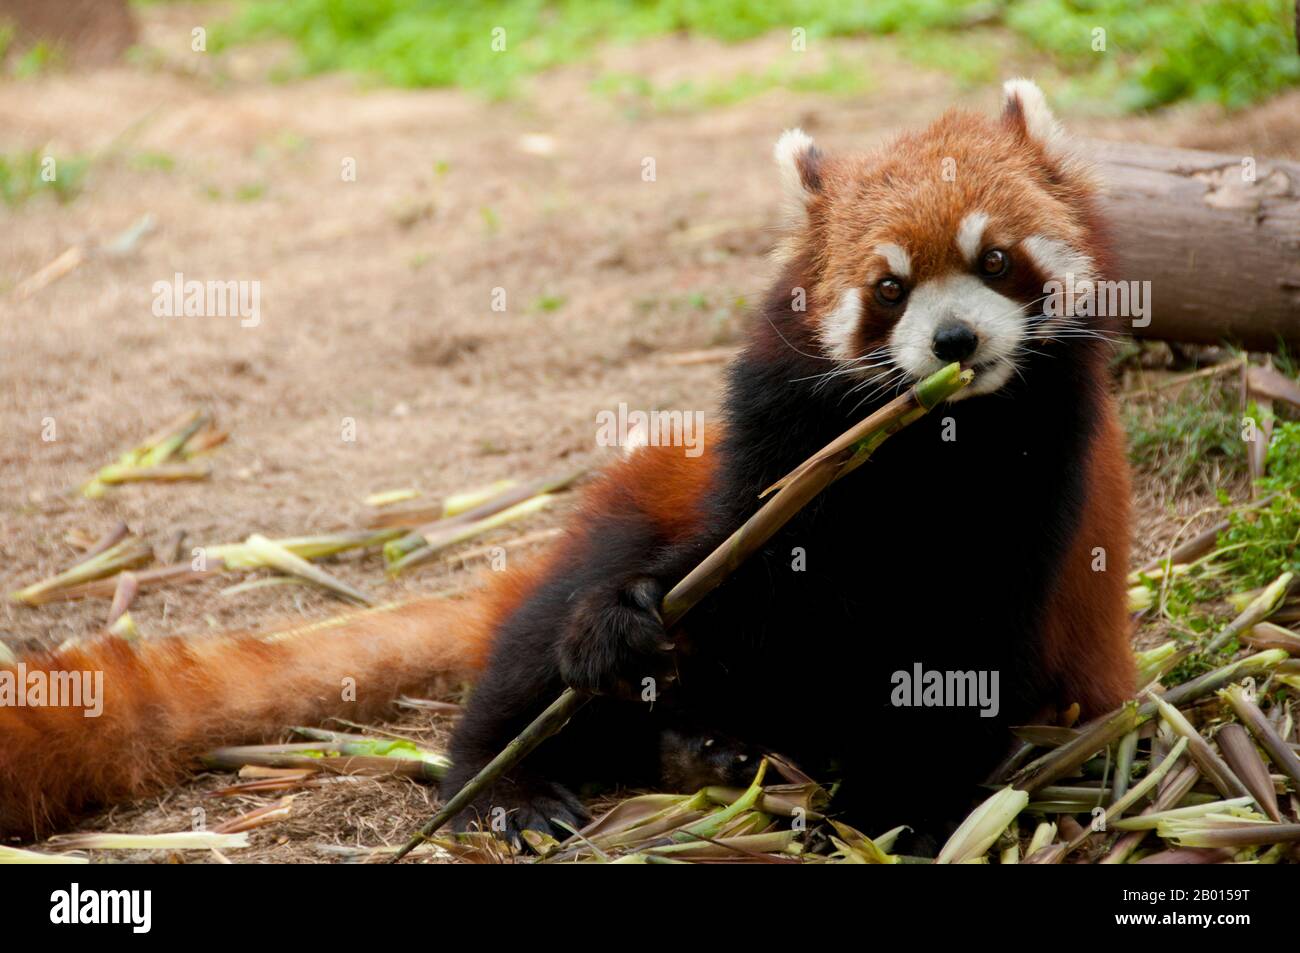 China: Roter Panda oder kleiner Panda, Forschungsbasis zur Züchtung des Großen Pandas, Chengdu, Provinz Sichuan. Der rote Panda (Ailurus fulgens, oder glänzende Katze) ist ein kleines arborealer Säugetier, der im östlichen Himalaya und im Südwesten Chinas beheimatet ist. Es ist die einzige Art der Gattung Ailurus. Sie ist etwas größer als eine Hauskatze und hat ein rötlich-braunes Fell, einen langen, zotteligen Schwanz und eine watschelnde Gangart aufgrund ihrer kürzeren Vorderbeine. Er ernährt sich hauptsächlich von Bambus, ist aber allesfressend und kann auch Eier, Vögel, Insekten und kleine Säugetiere fressen. Es ist ein einsames Tier, das hauptsächlich von der Dämmerung bis zur Dämmerung aktiv ist. Stockfoto